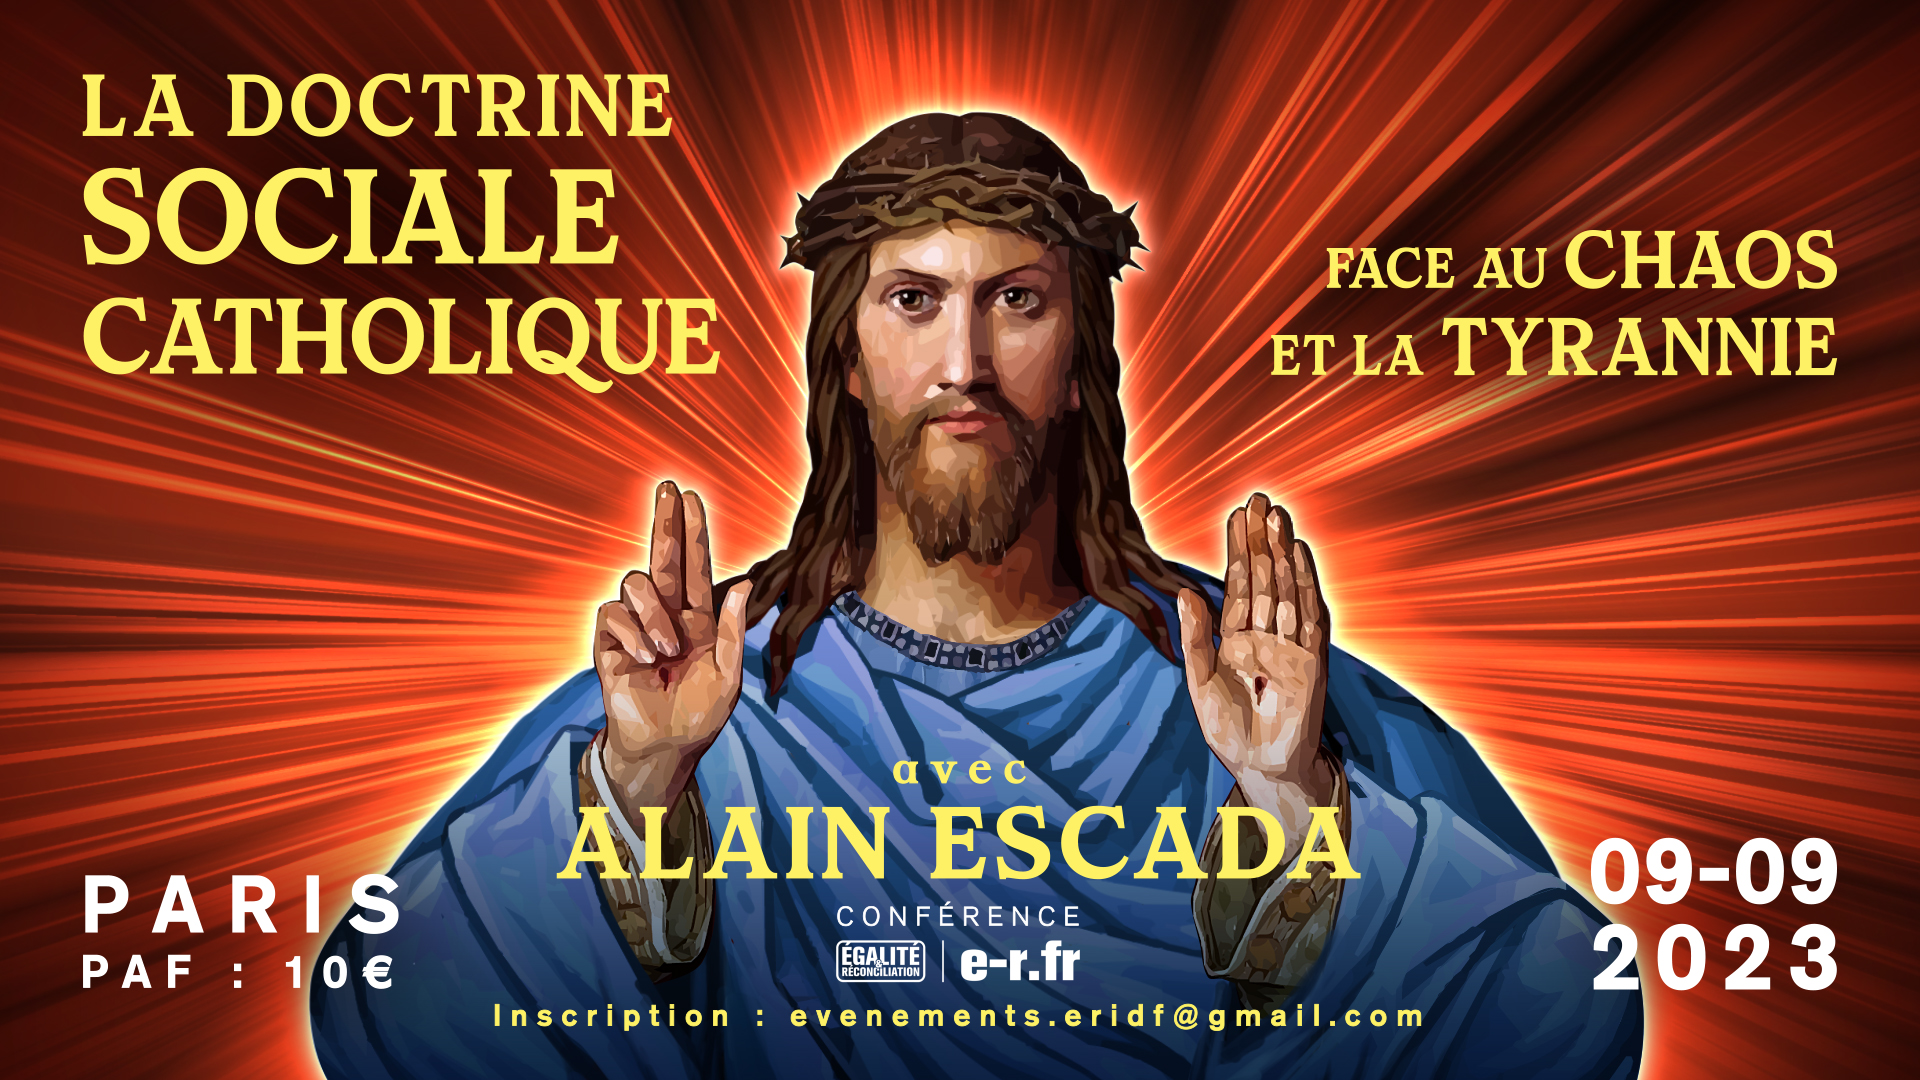 La doctrine sociale catholique face au chaos et à la tyrannie – Conférence d’Alain Escada à Paris